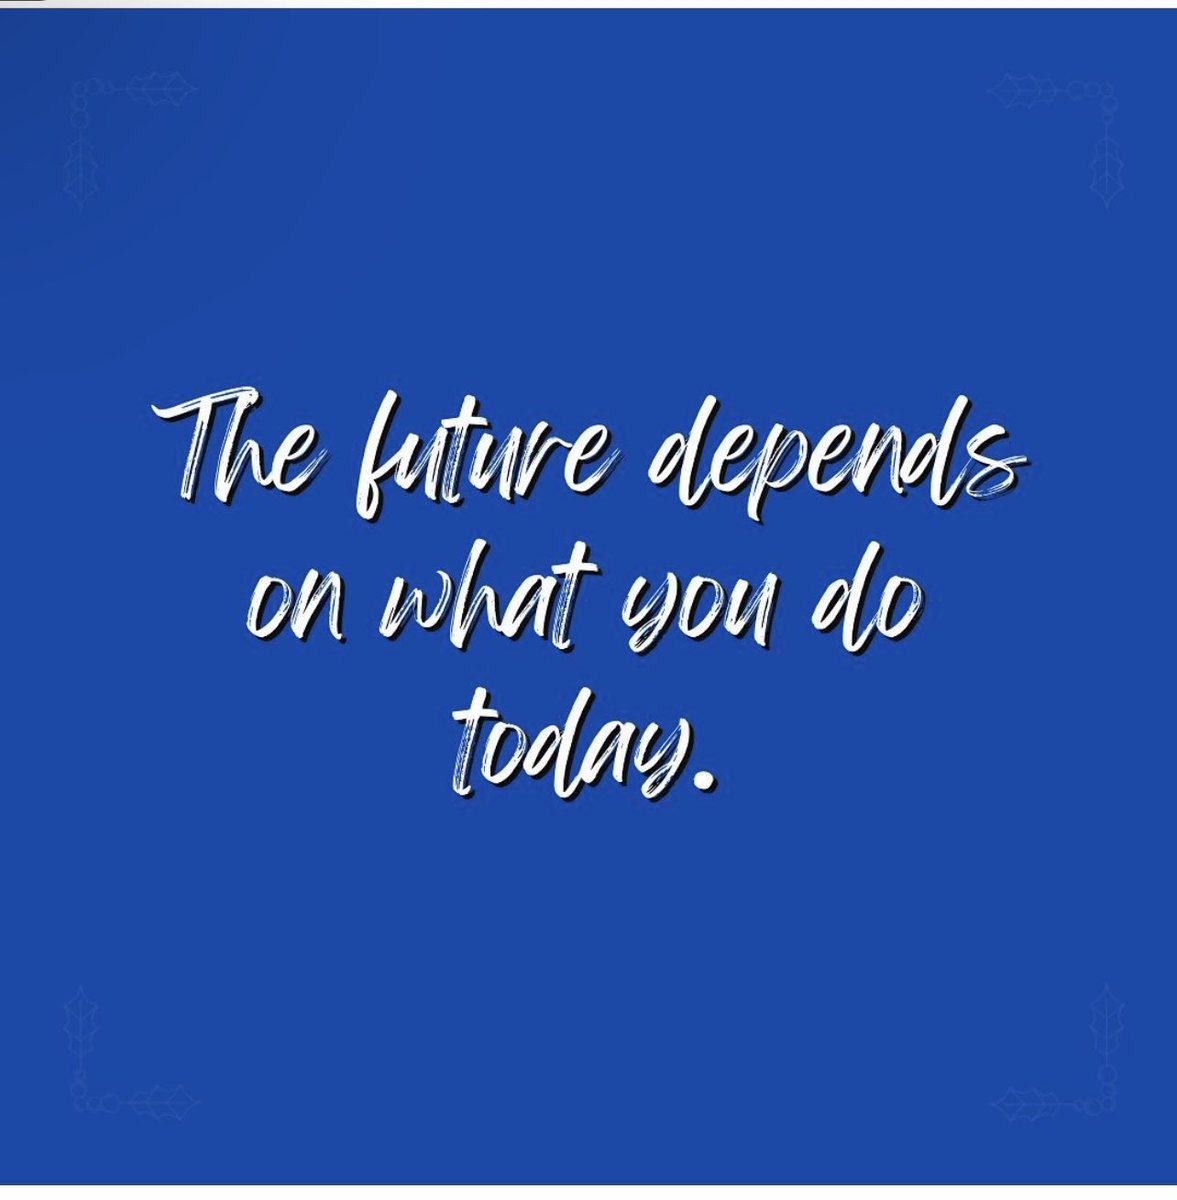 #tweetbluethursday Take this quote in consideration Tigers! The future depends on what you do TODAY!🐯 #tsu26💙🐯 #tsu25🐯💙 #tsu24🐯💙 #tsu23💙🐯 #tsu22🐯